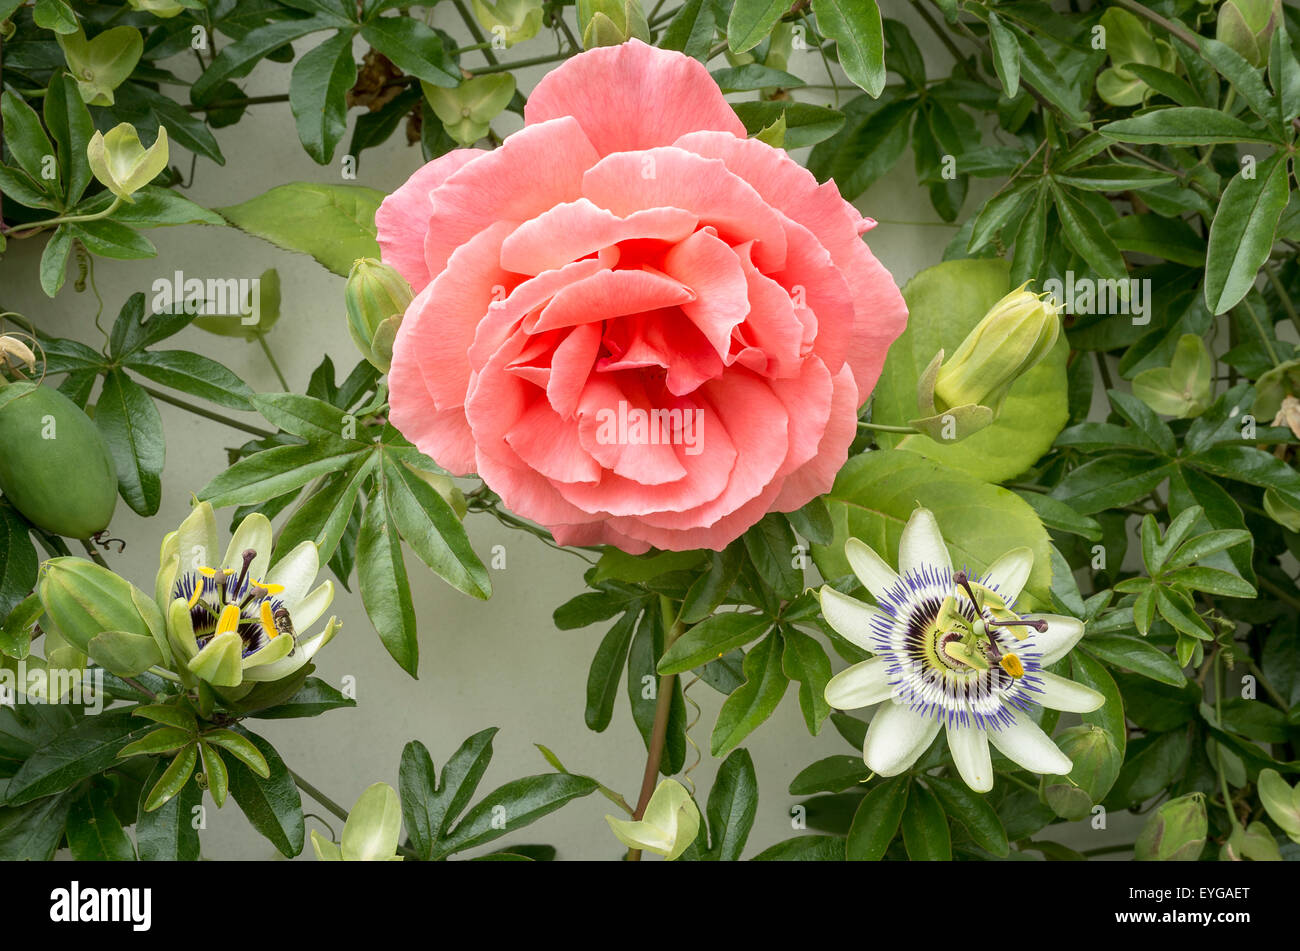 Rosa salmone saltando fiore cresce una parete con fiori di passiflora Foto Stock